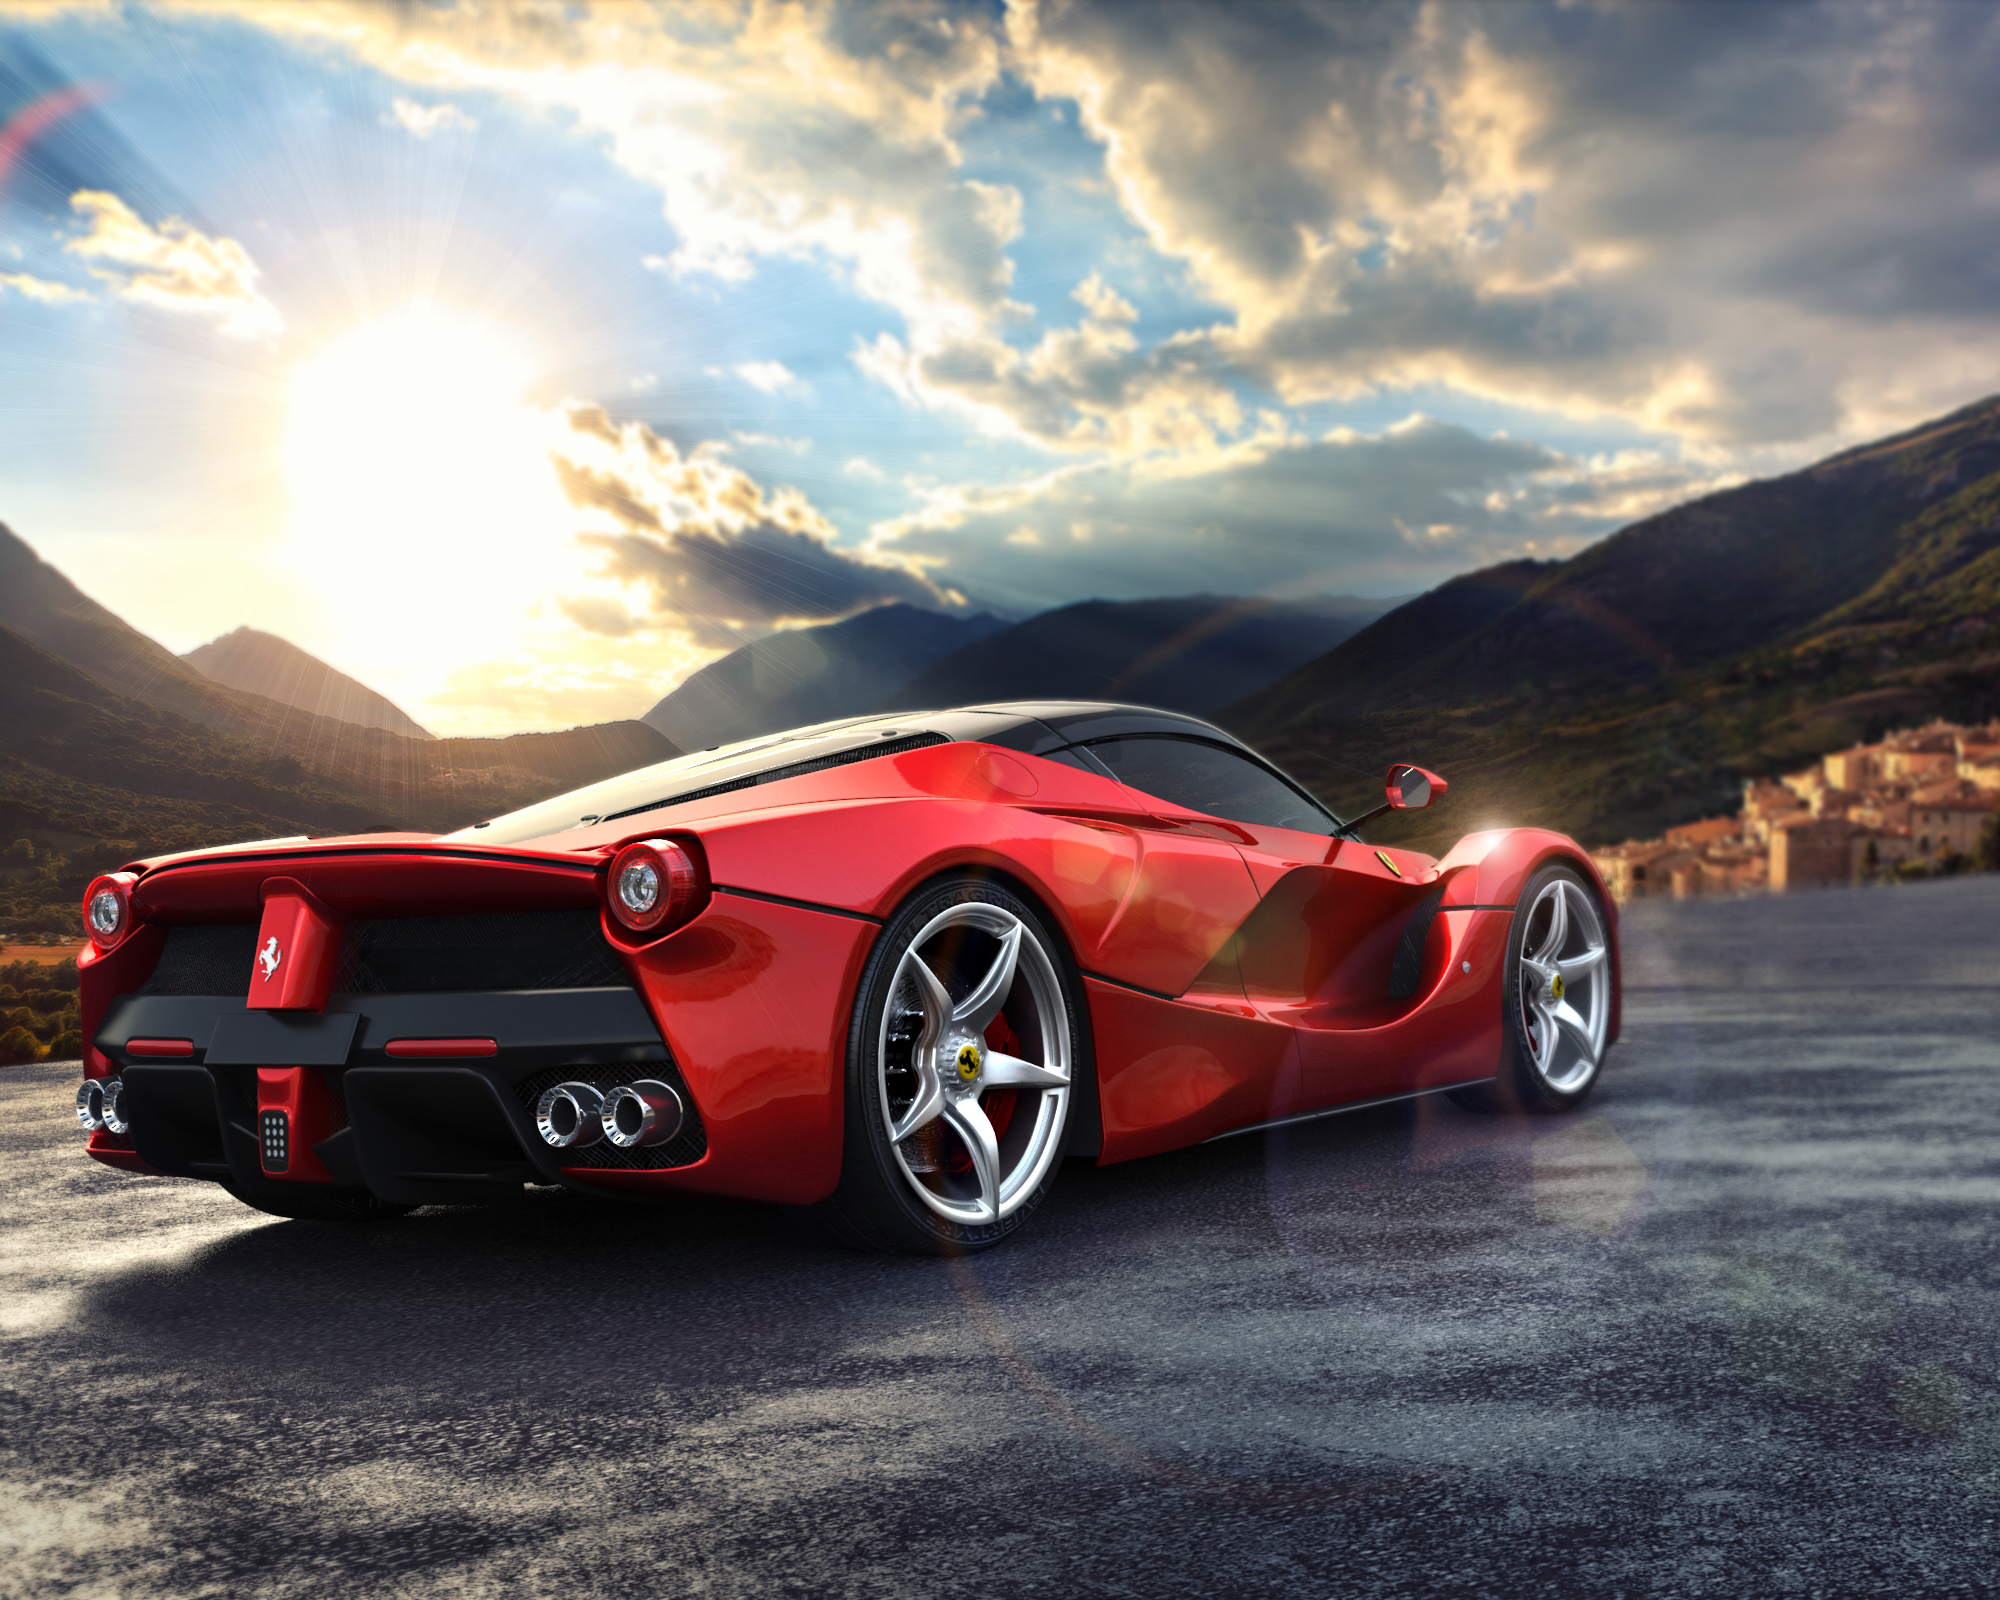 Ferrari Laferrari Pictures | Download Free Images on Unsplash